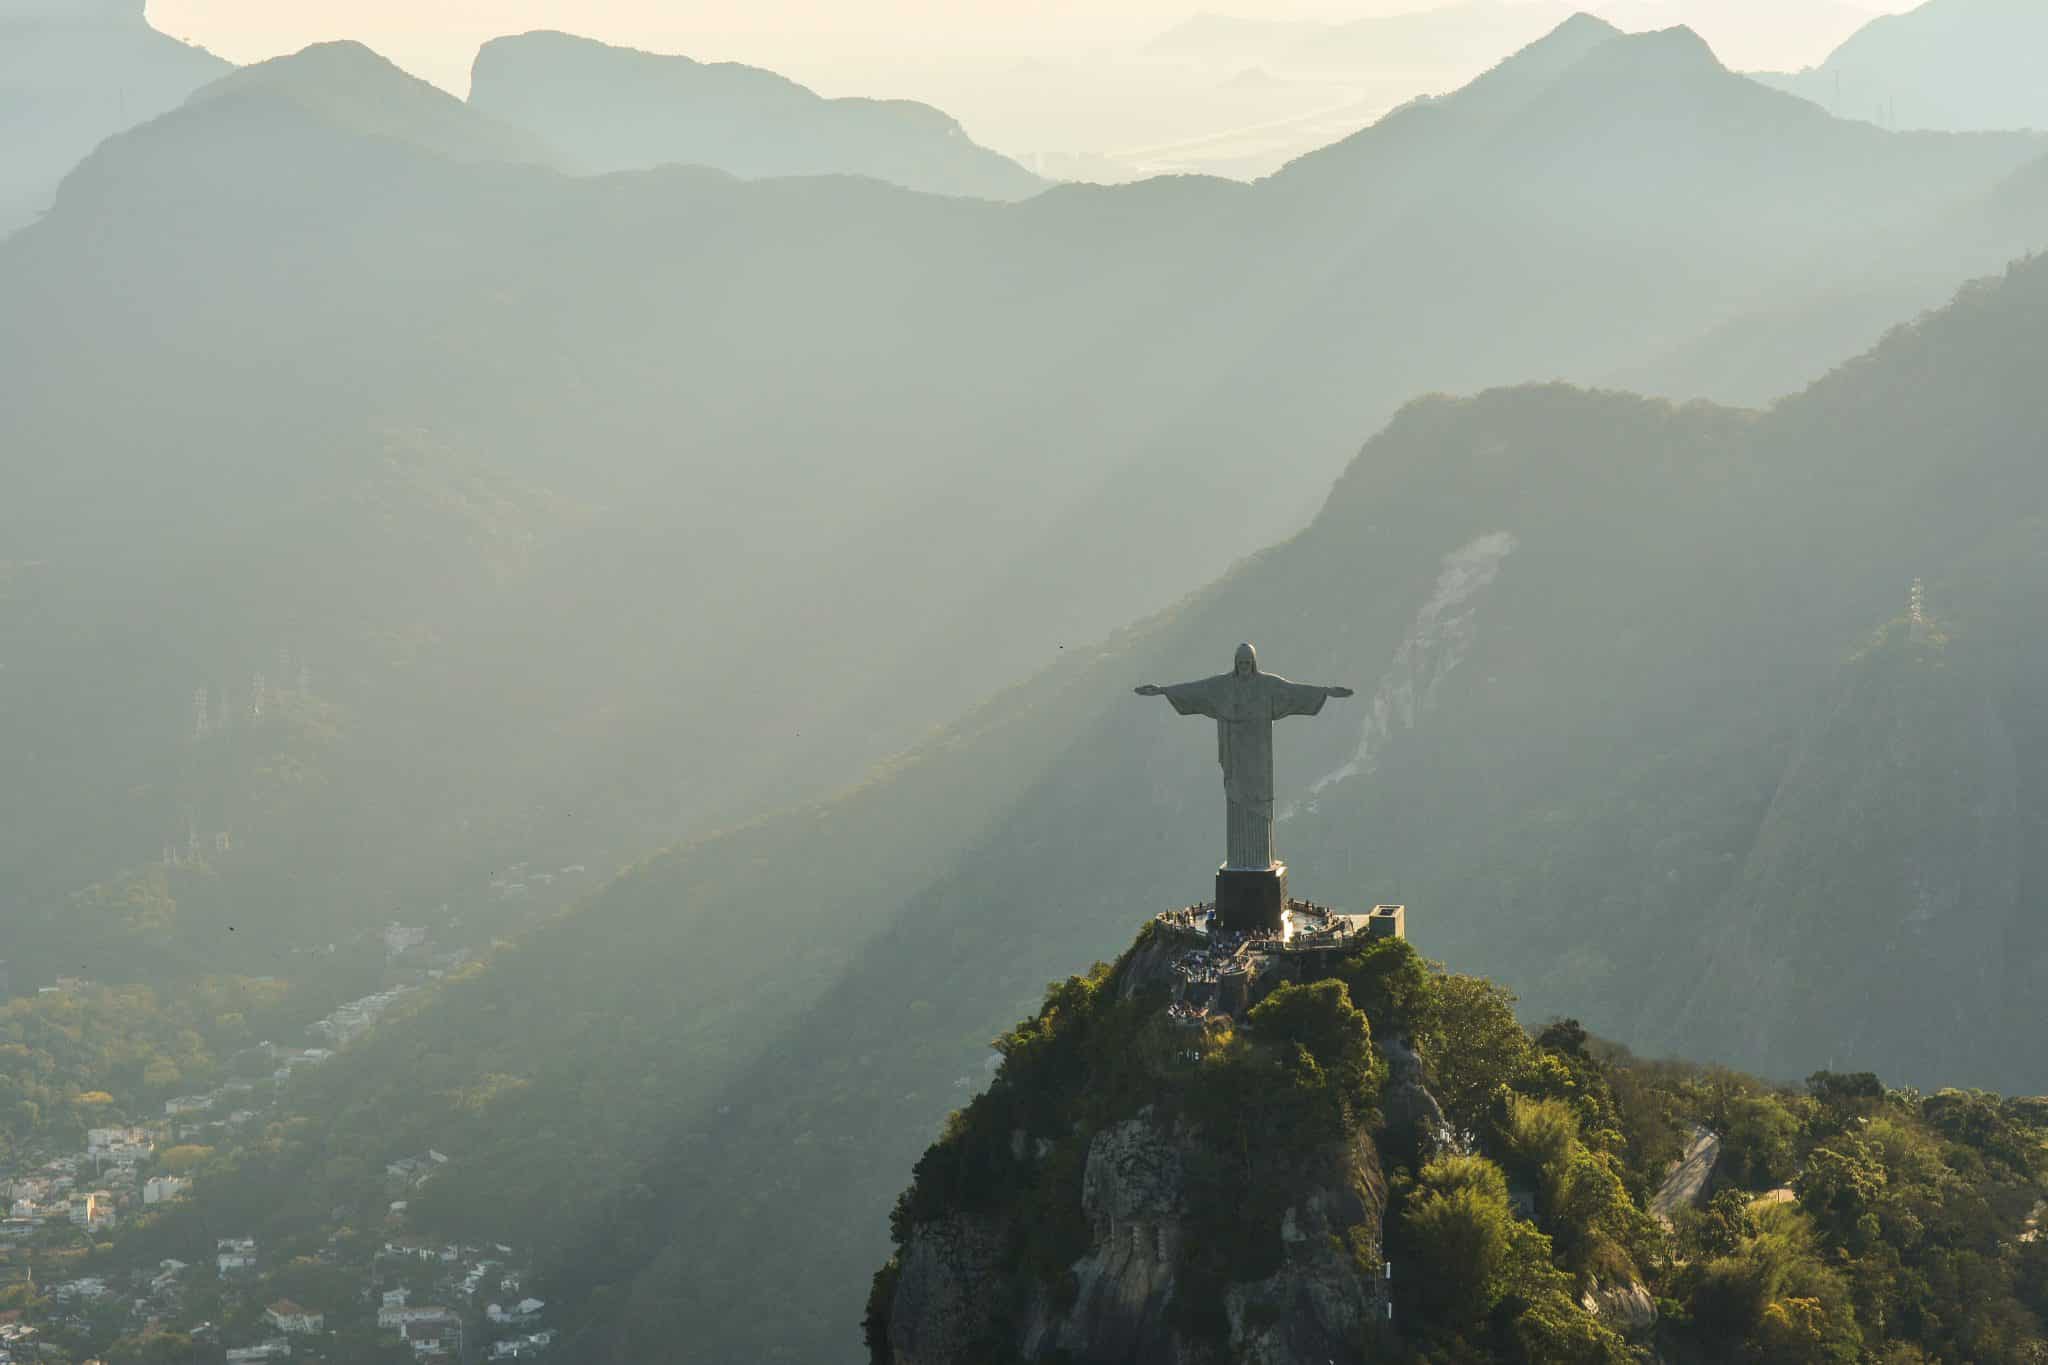 Rio de Janeiro Christ the Redeemer statue